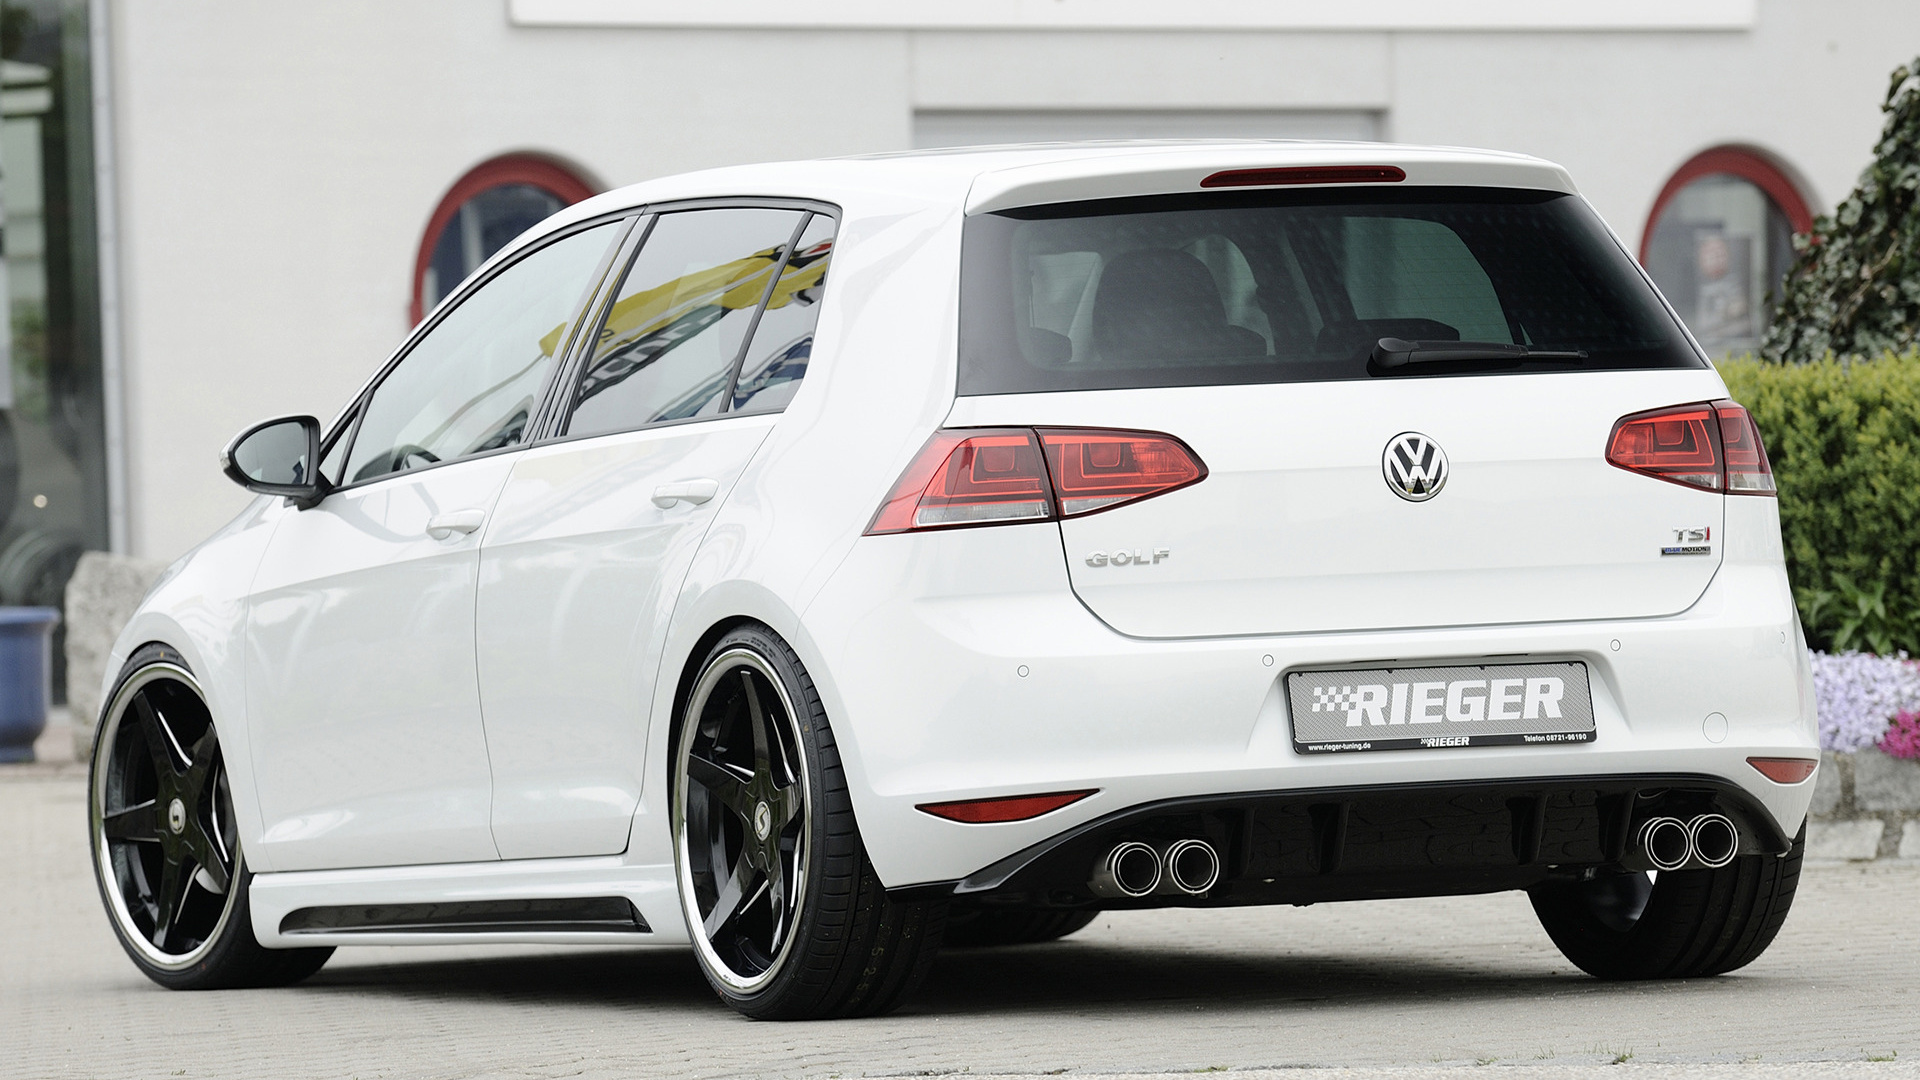 2013 Volkswagen Golf by Rieger [5-door] - Wallpapers and HD Images ...